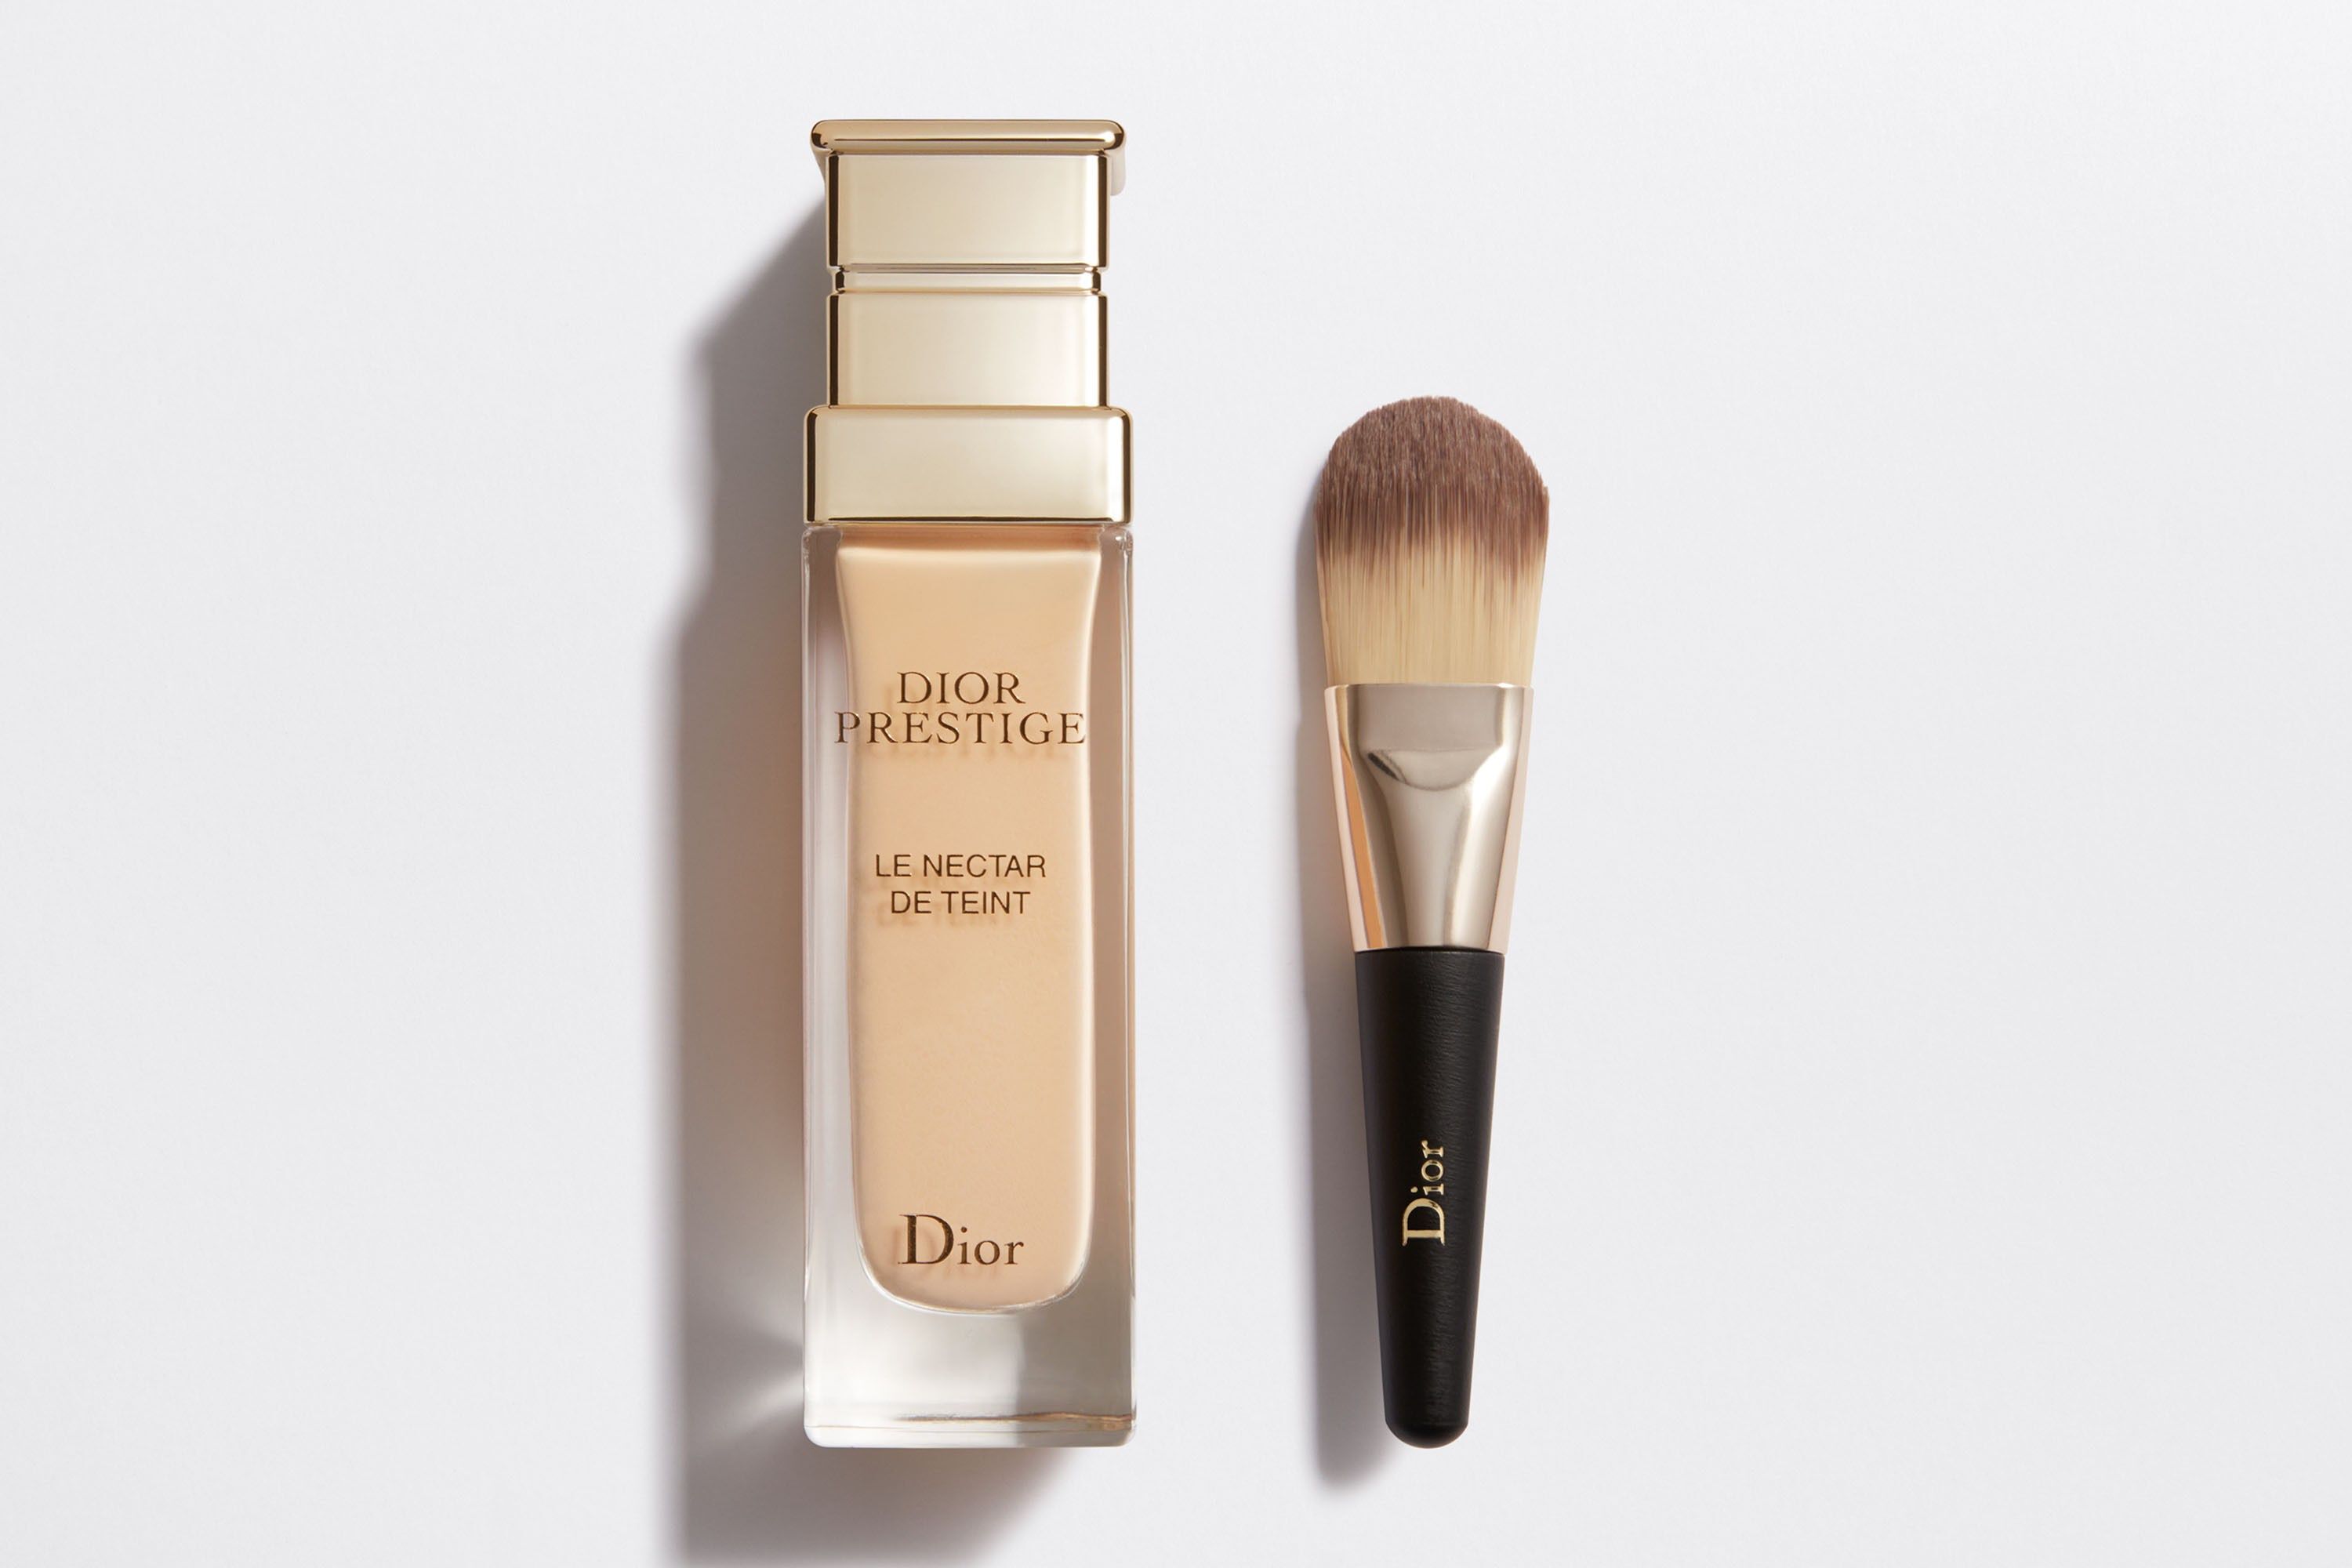 Dior Prestige Prestige Le Nectar de Nuit by DIOR  Buy online   parfumdreams